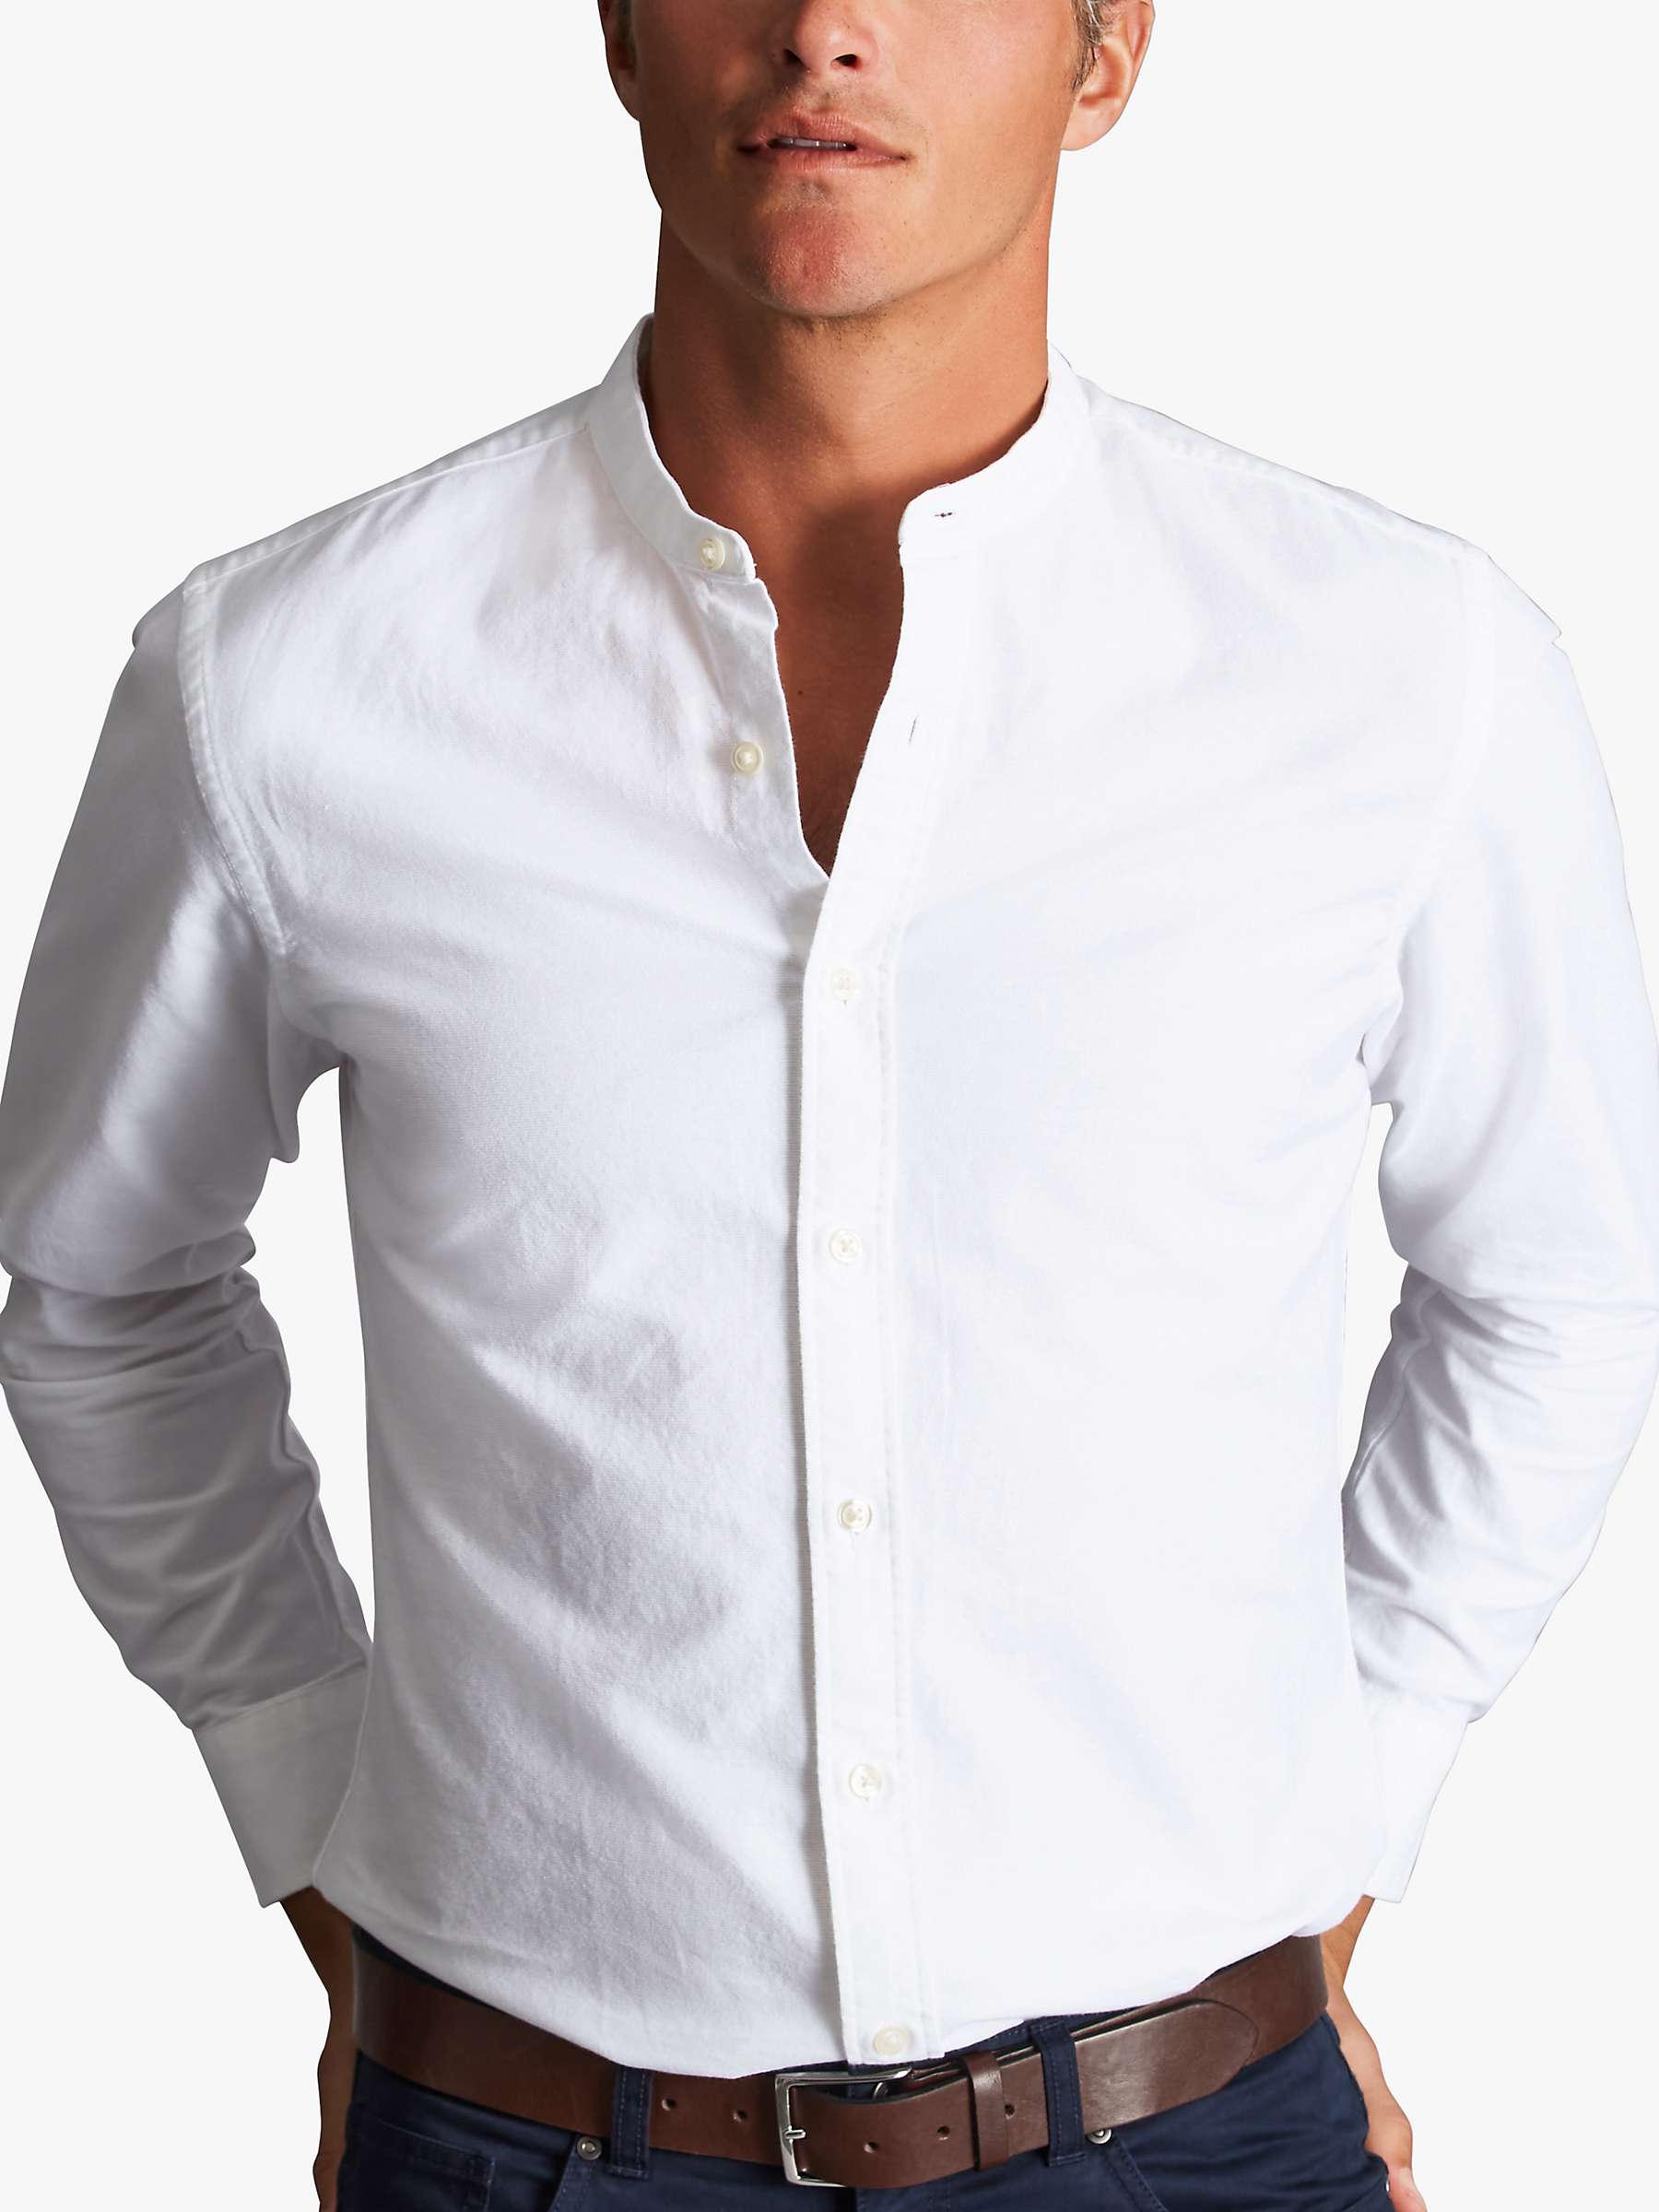 Buy Charles Tyrwhitt Cotton Linen Blend Collarless Slim Fit Shirt, White Online at johnlewis.com